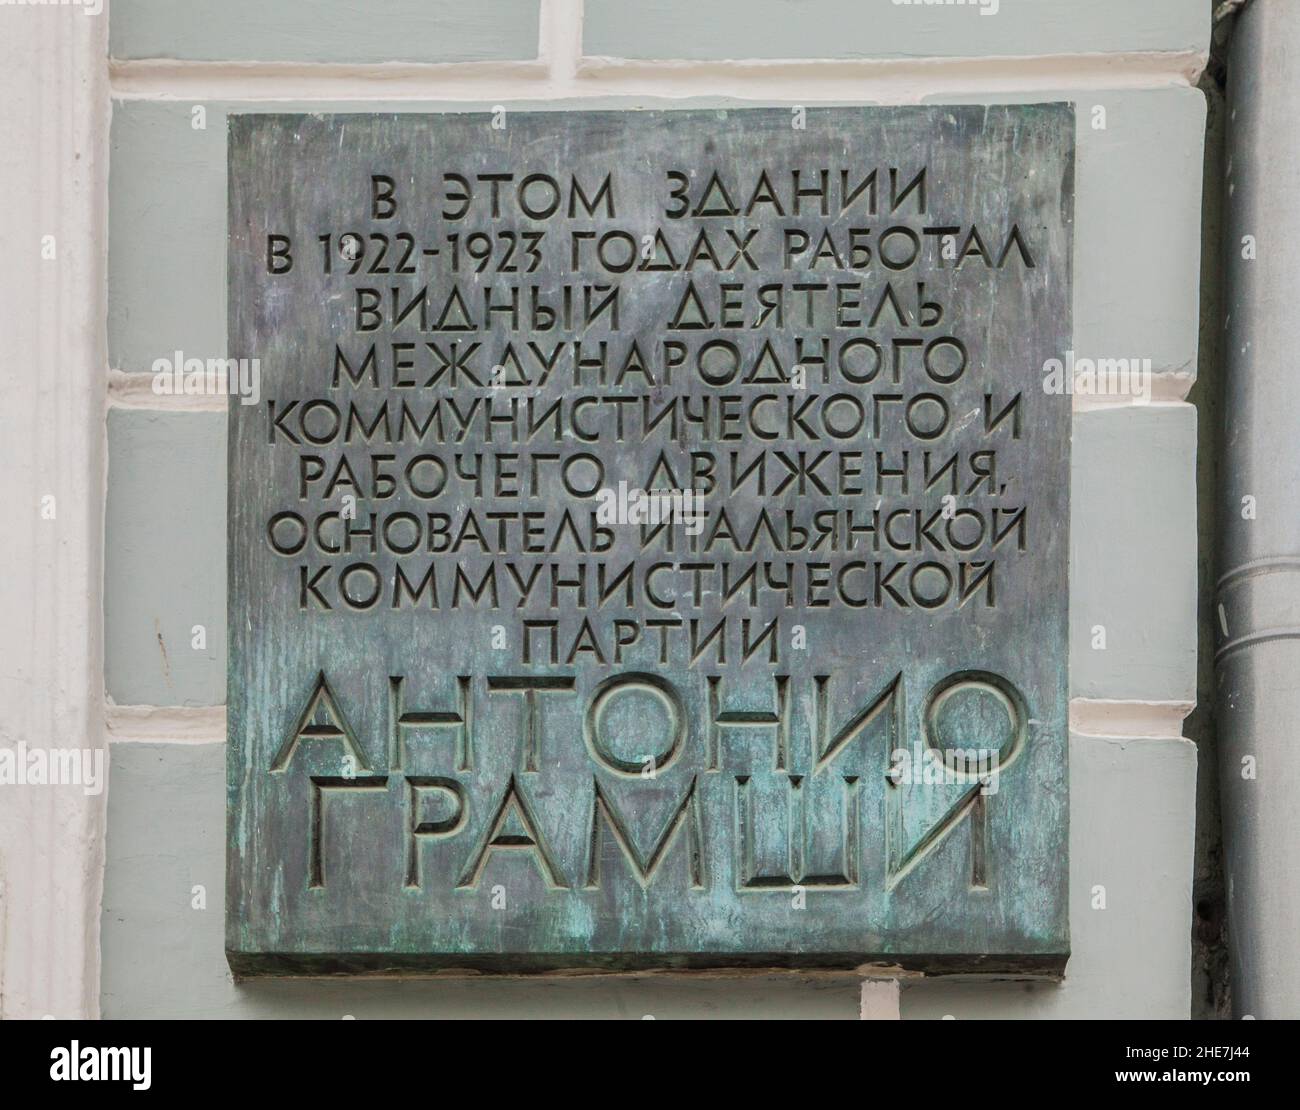 Moskau, Russland - Eine Gedenktafel an einer Wand zum Gedenken an den Gründer der italienischen kommunistischen Partei Antonio Gramsci Stockfoto